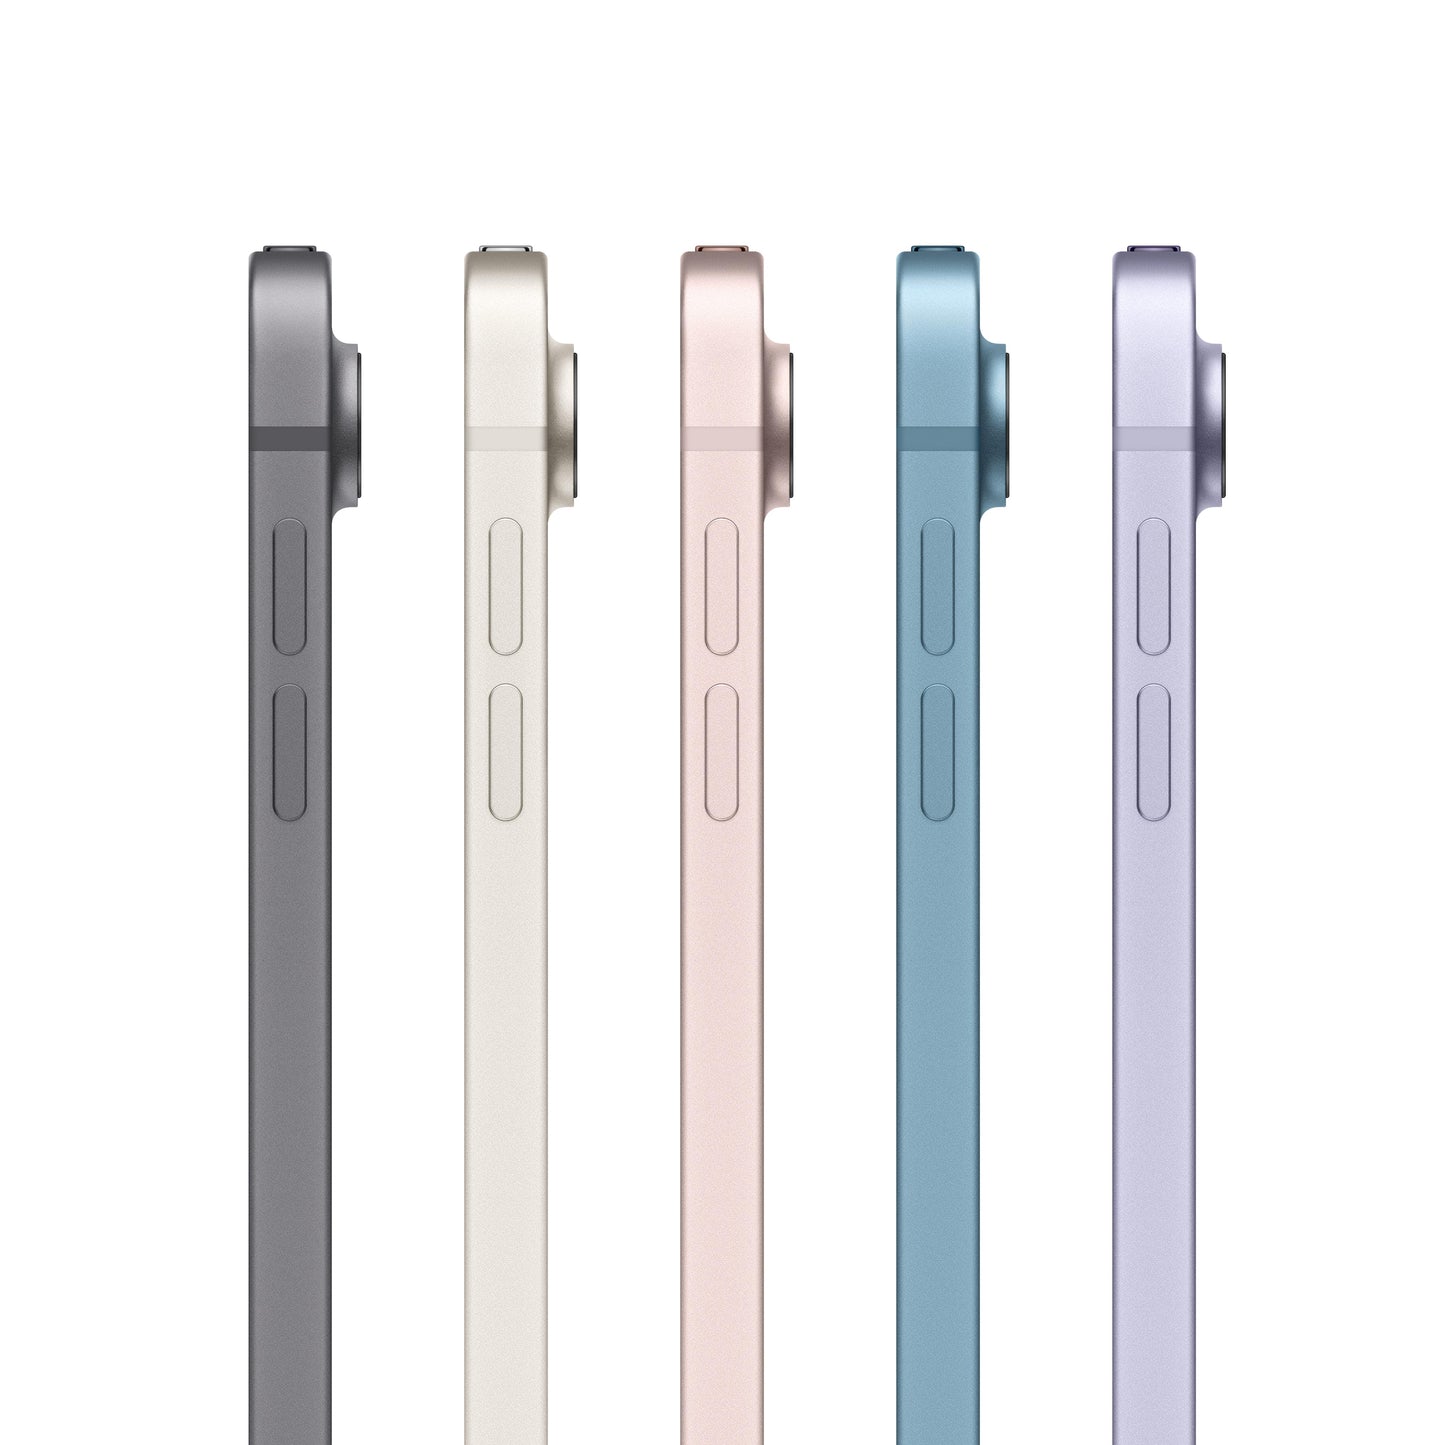 2022 iPad Air Wi-Fi + Cellular 256GB - Purple (5th generation)